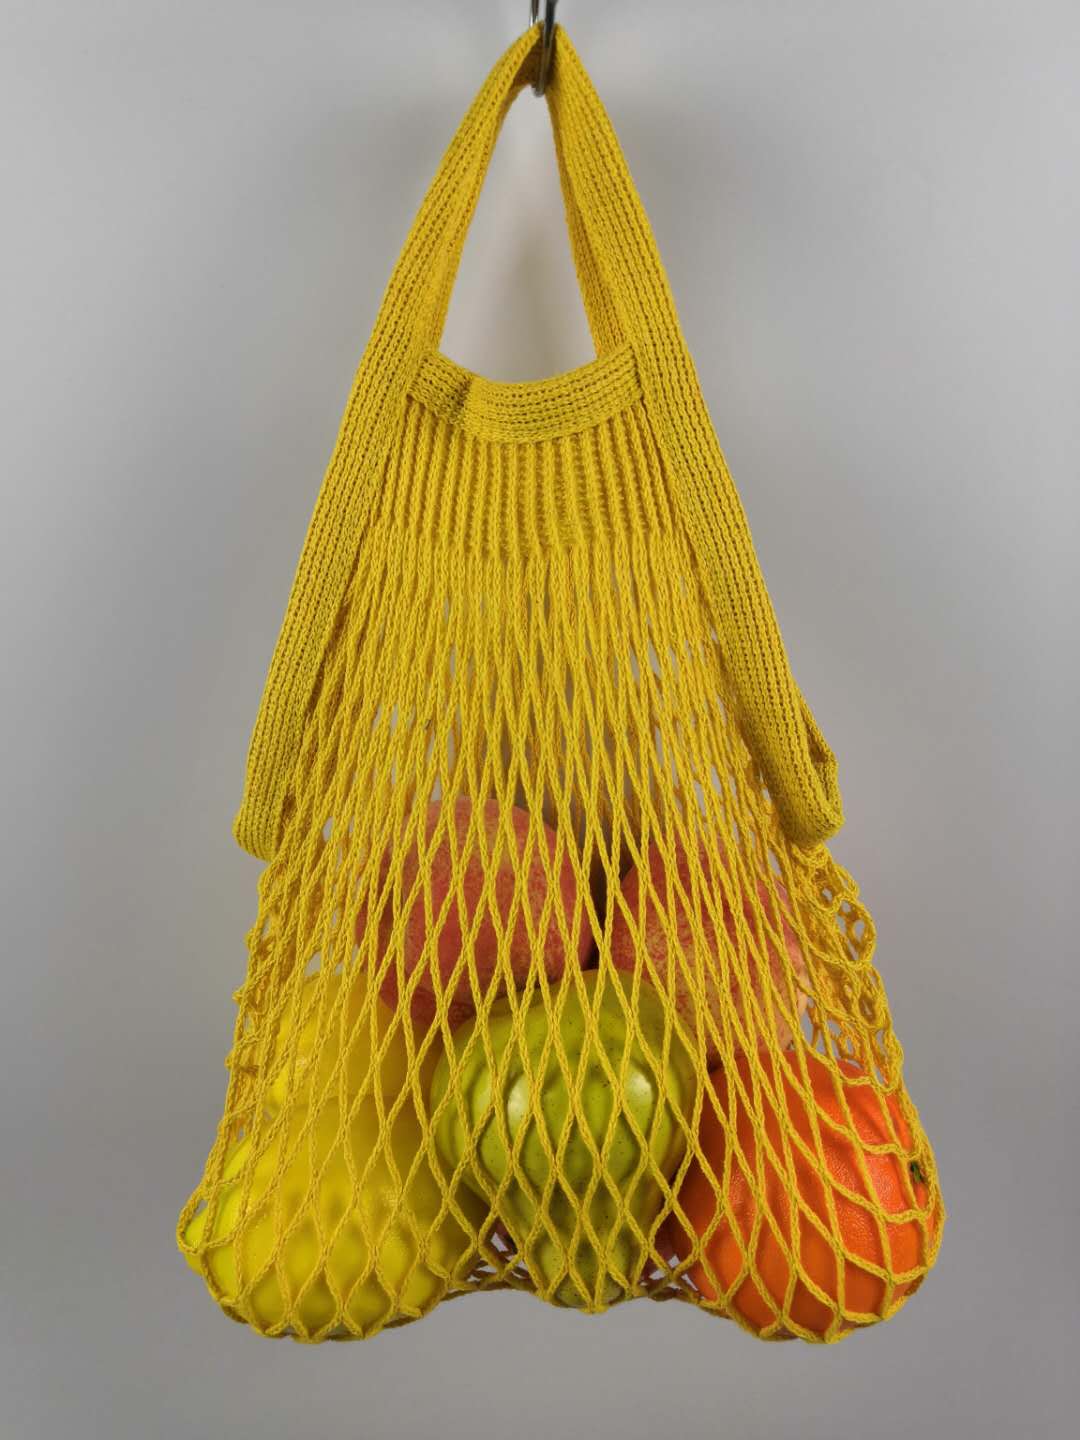 French new model net bag